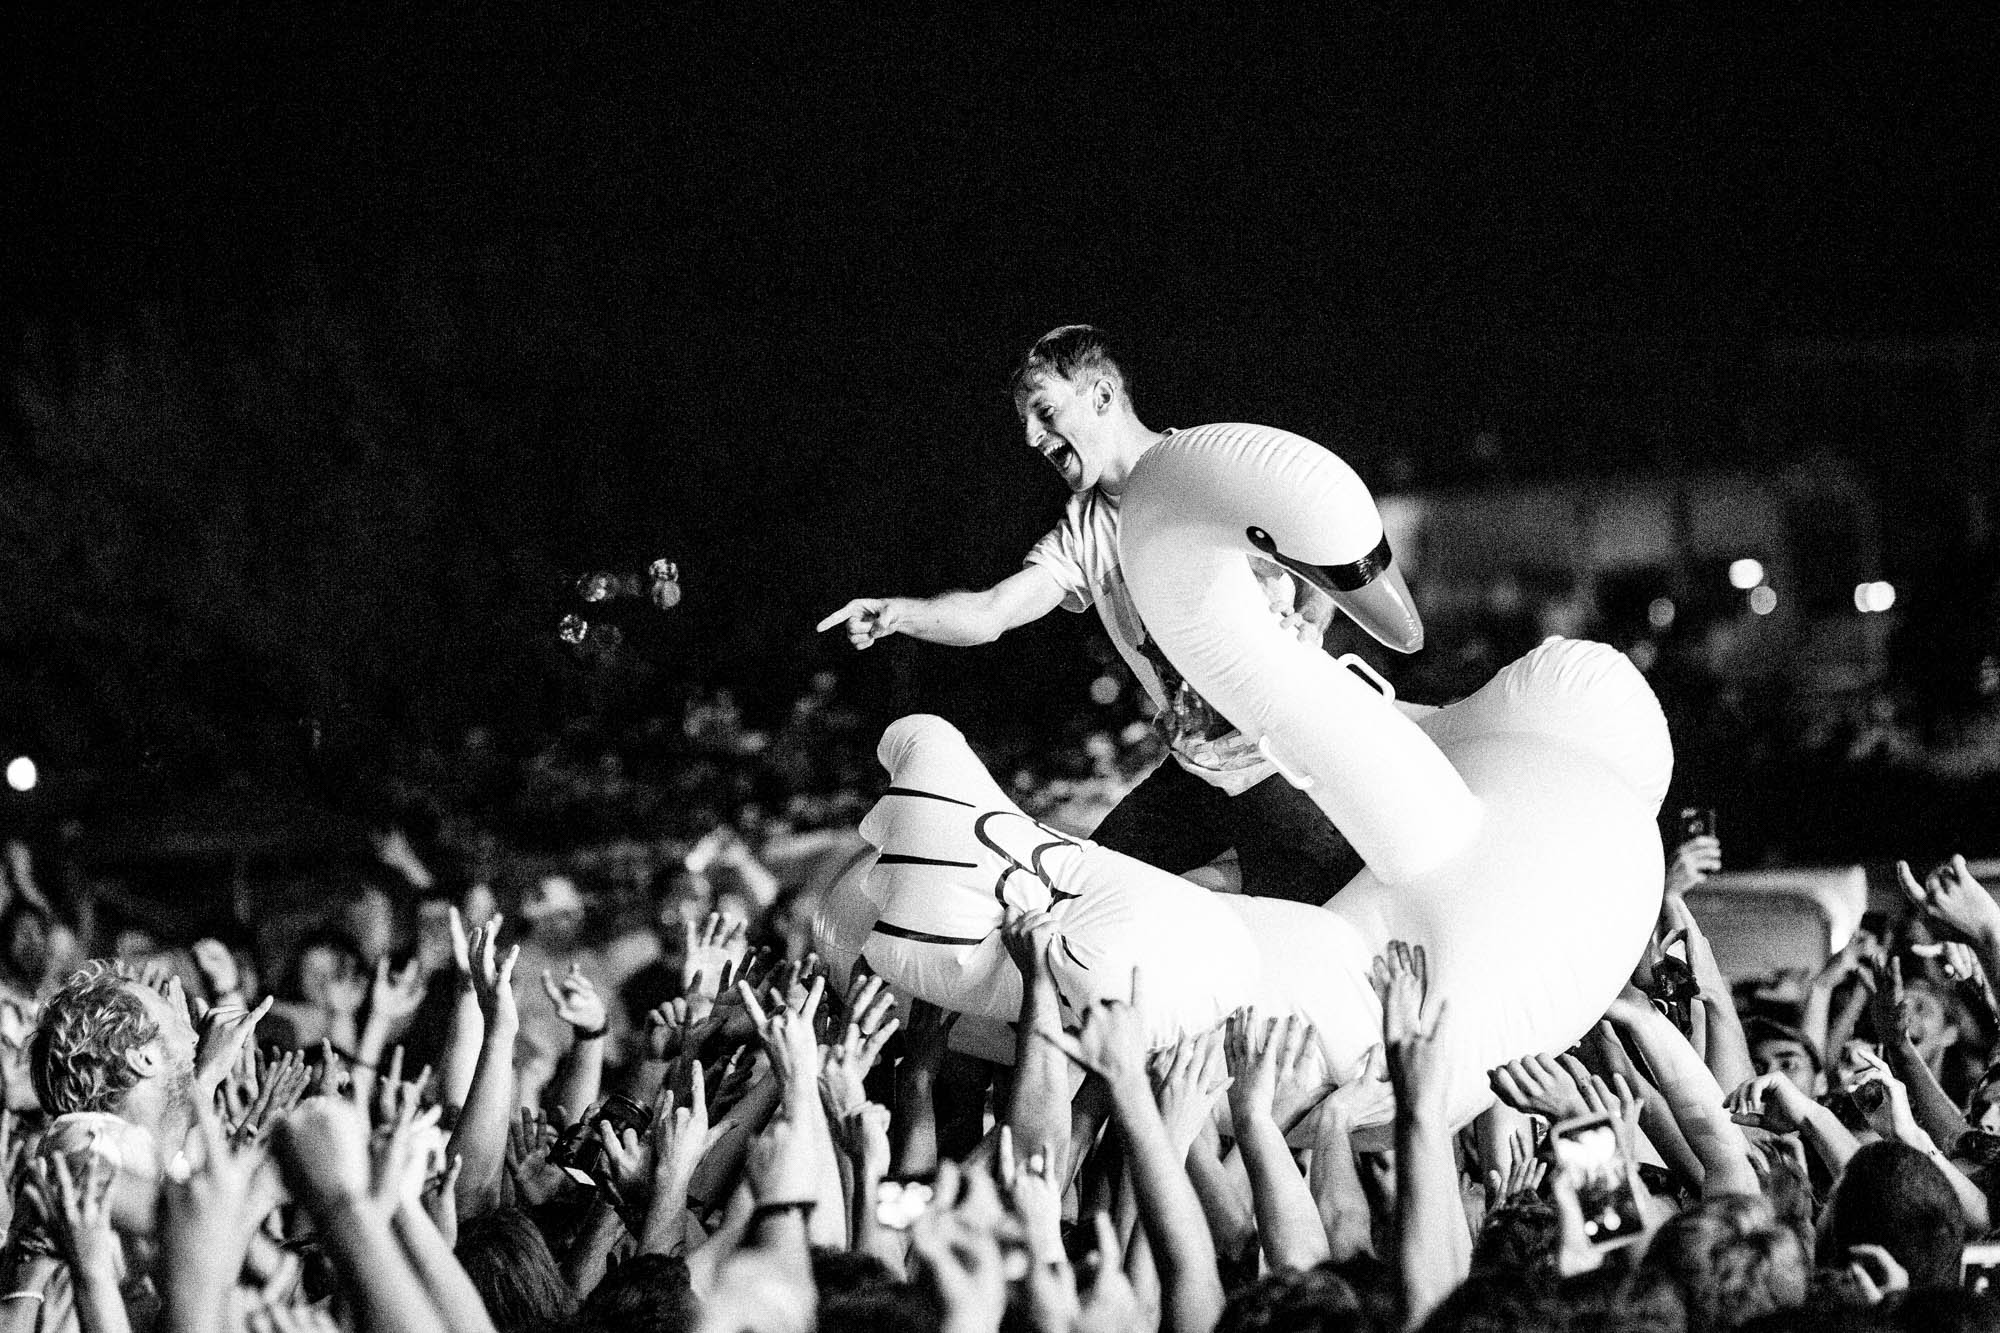 Stefan Babcock chevauche un grand canard blanc gonflable à travers la foule d’un concert à Echo Beach à Toronto; il est maintenu en l’air par des centaines de mains. Il est vêtu de façon décontractée et porte un t-shirt graphique blanc. Il montre du doigt le public tout en souriant.